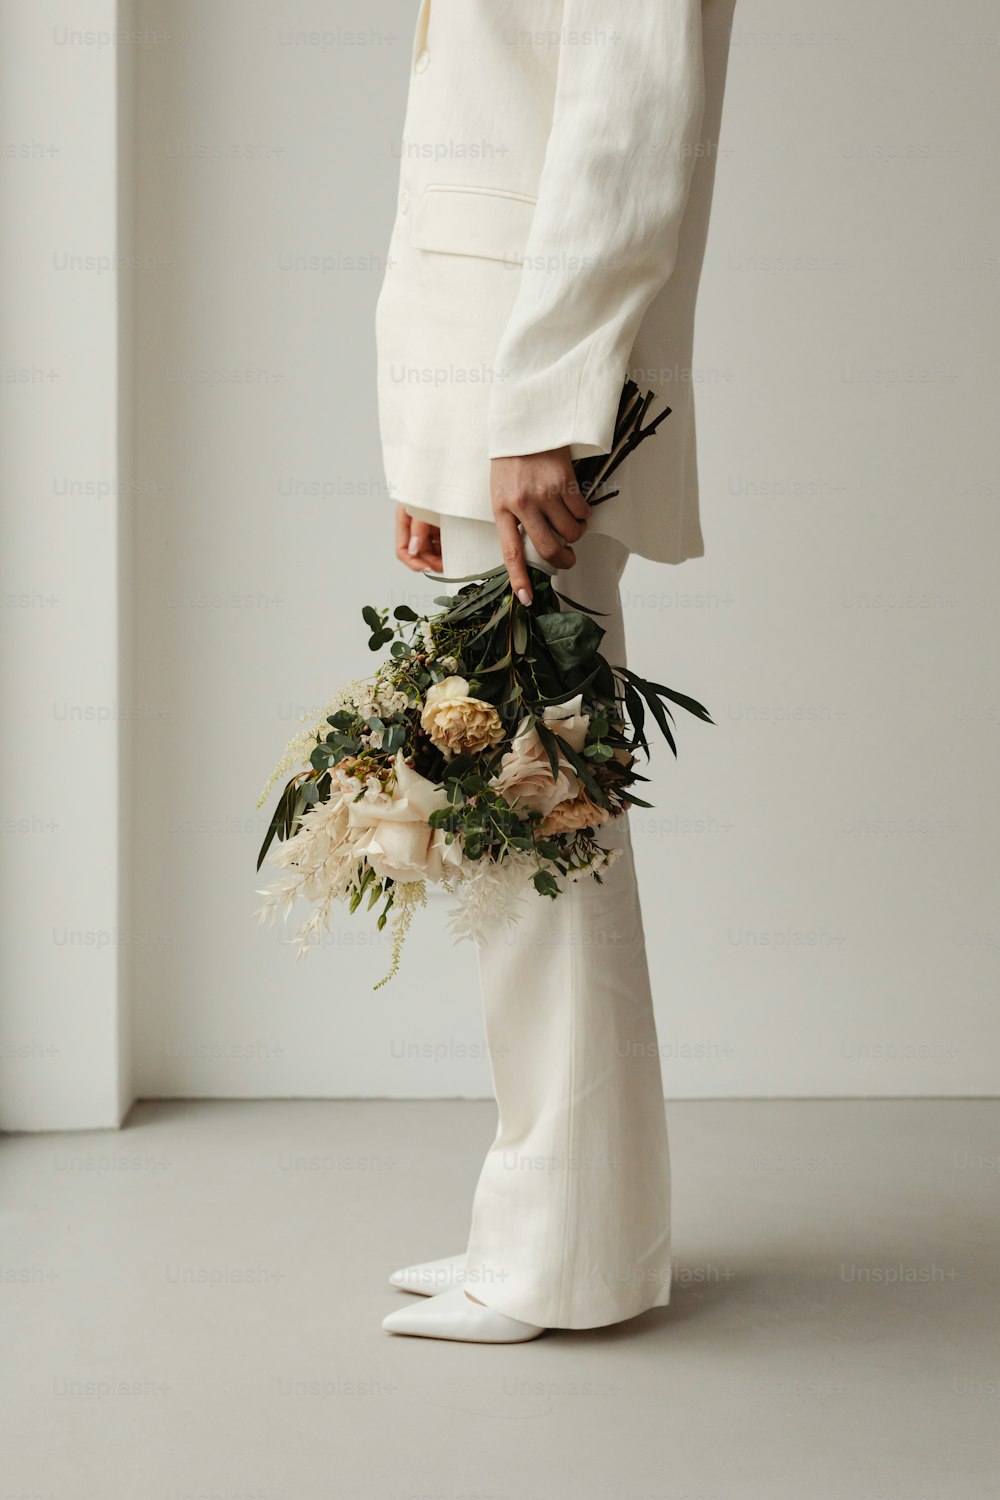 eine Person in einem weißen Anzug, die einen Blumenstrauß hält